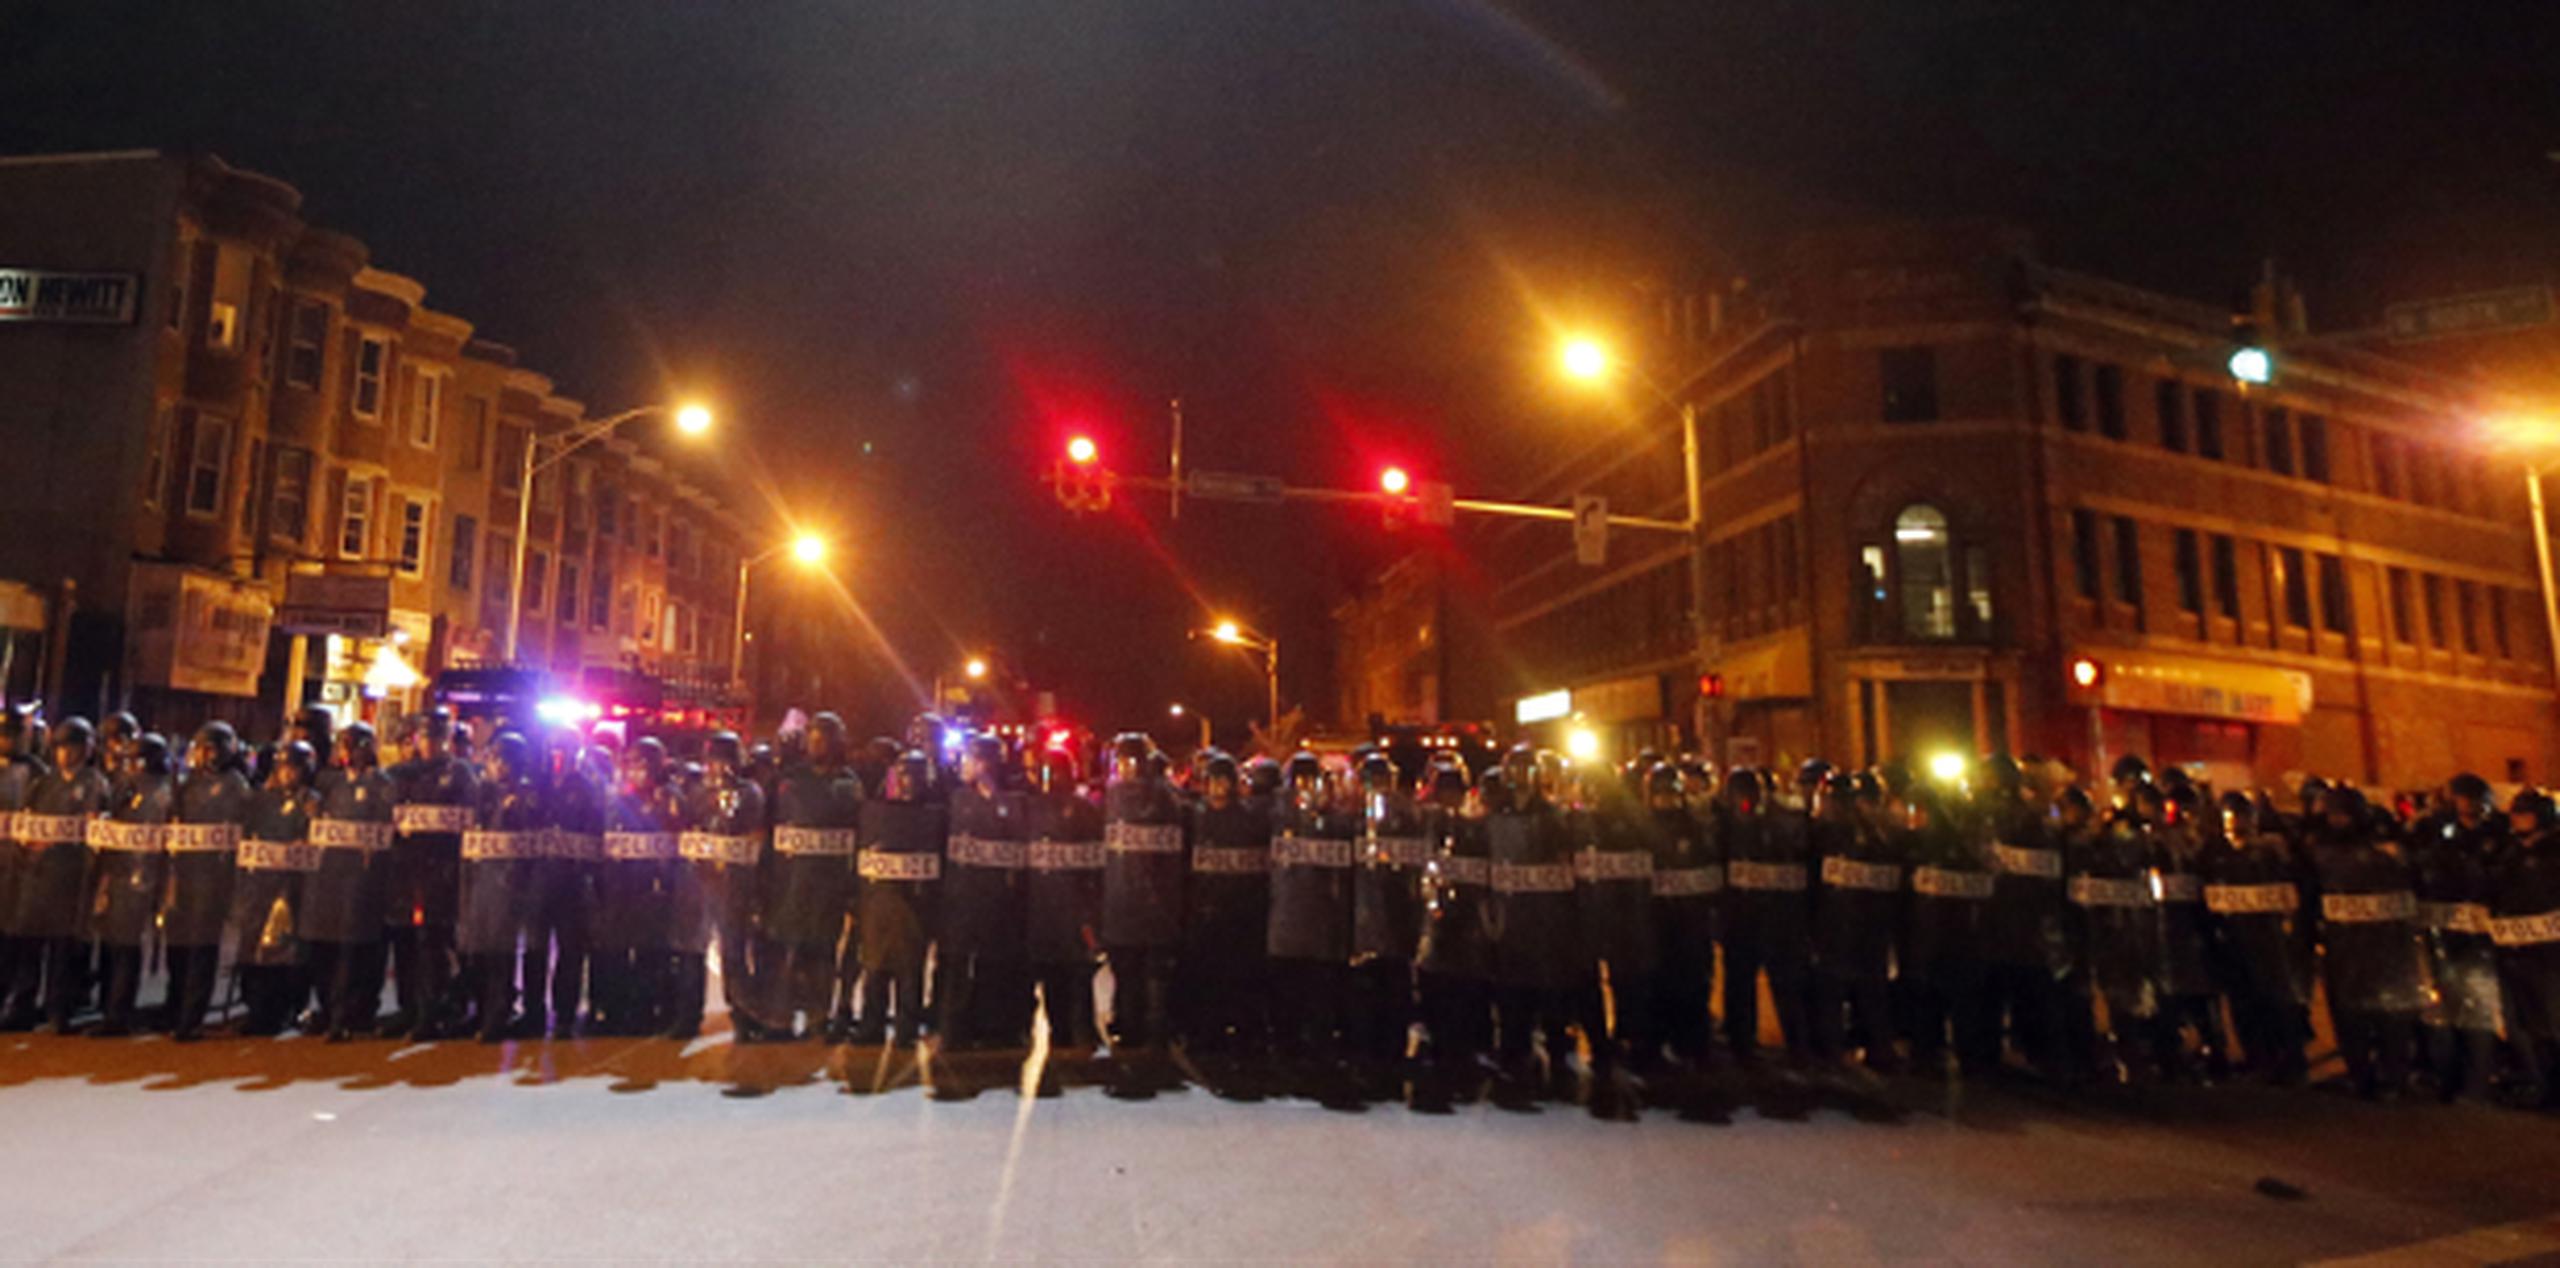 Policías de Baltimore prestaban vigilancia anoche durante el toque de queda ordenado tras los disturbios en esa ciudad. (Prensa Asociada)